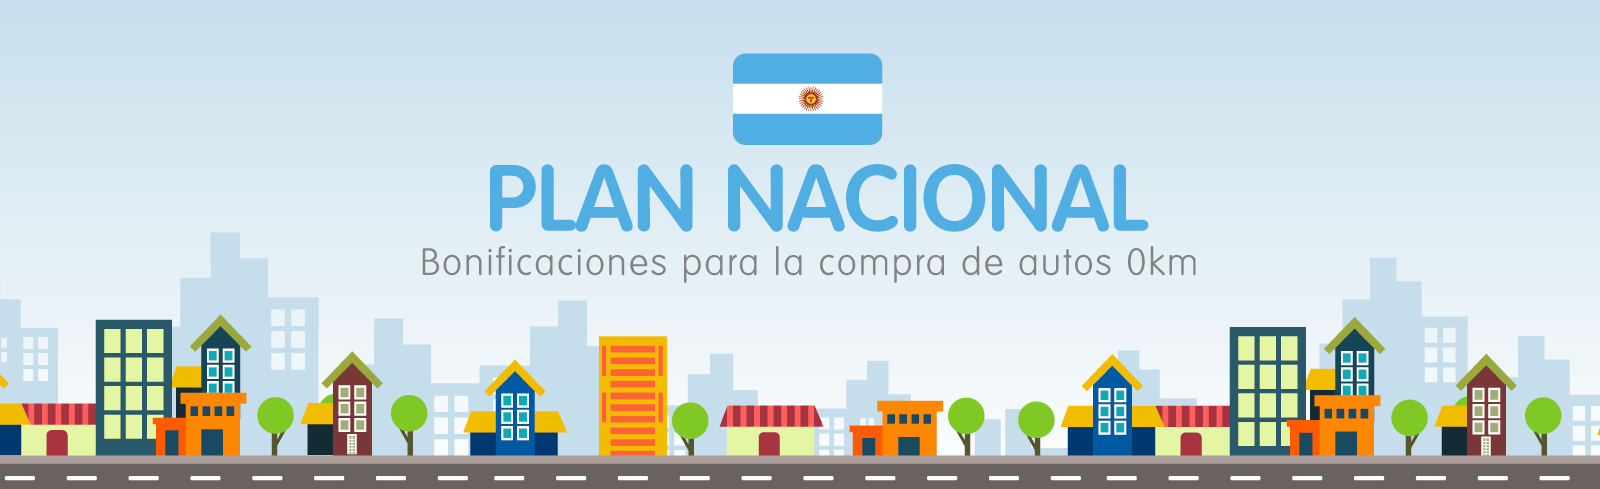 Plan Nacional Argentina 2020